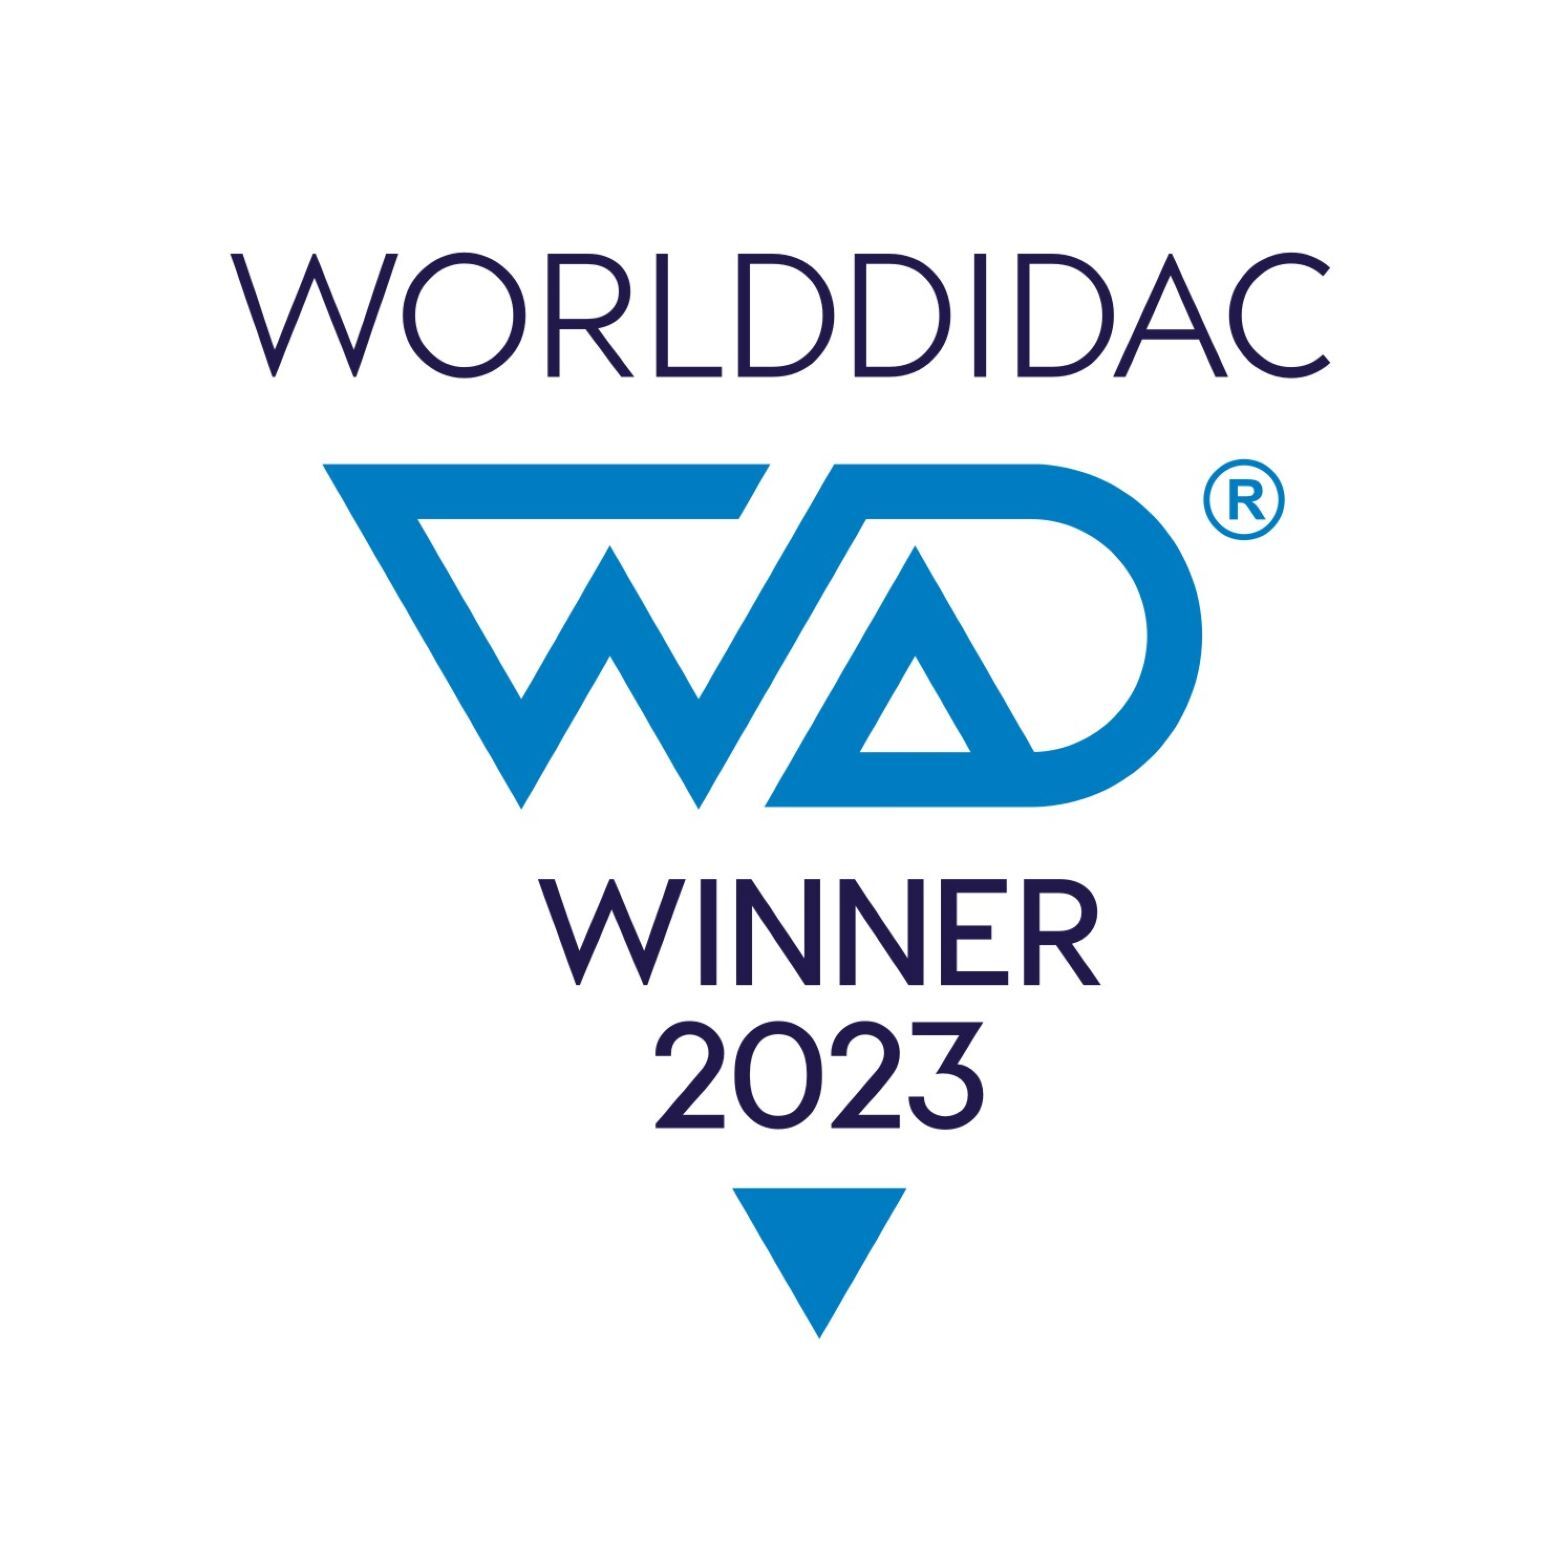 WDA WINNER 2023 logo 2